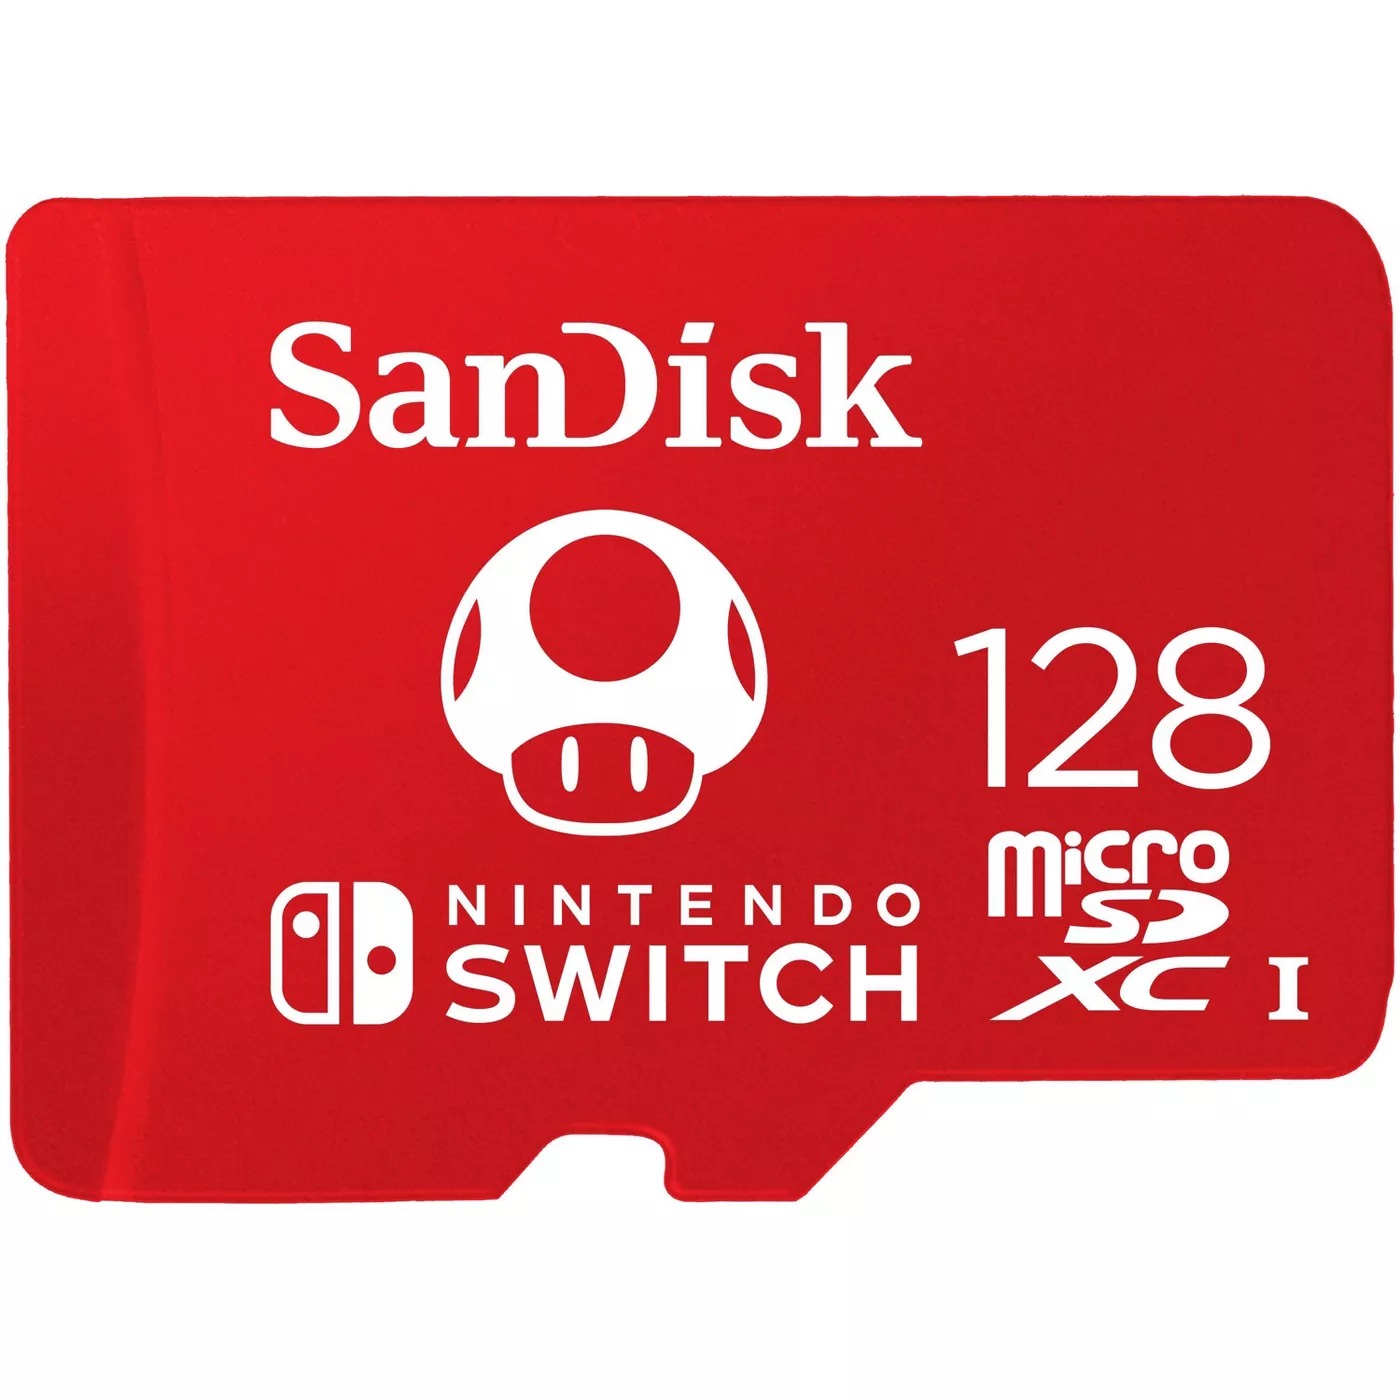 免费内存卡 Free SanDisk microSDXC card 128GB when you buy 2 select Nintendo Switch digital Games 